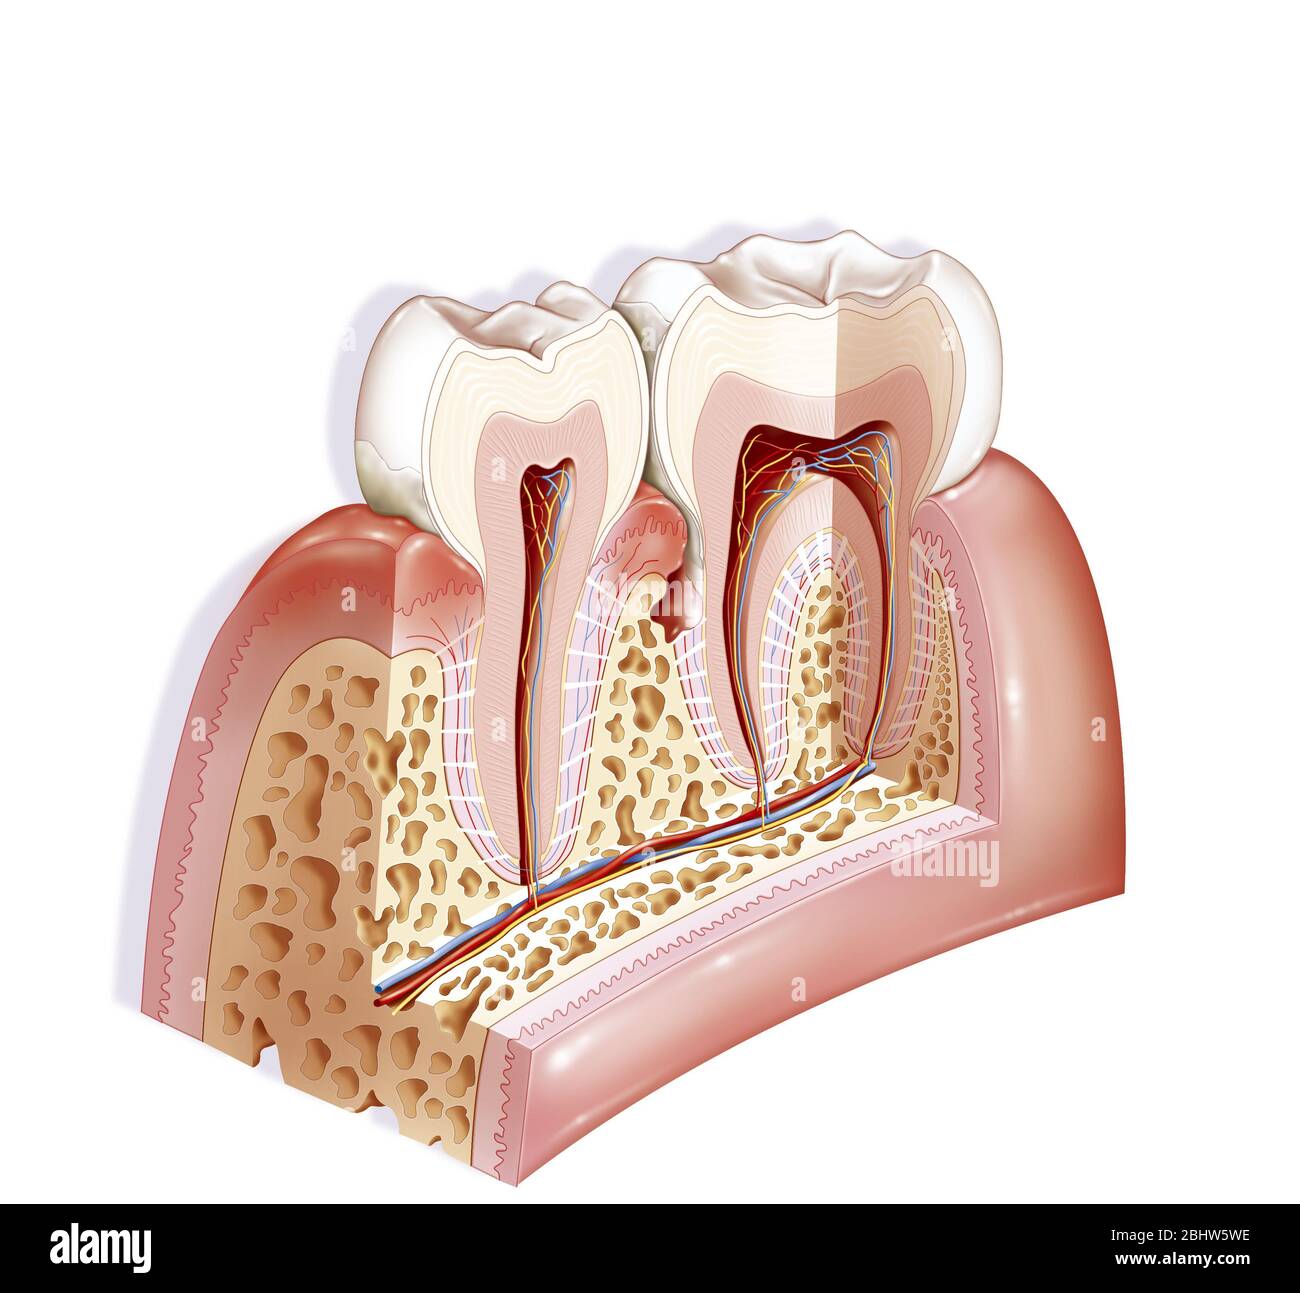 La periodontite è un'infiammazione del periodonzio. Il periodonzio è costituito dai tessuti di supporto dell'organo dentale: La gomma, il cementum, Foto Stock